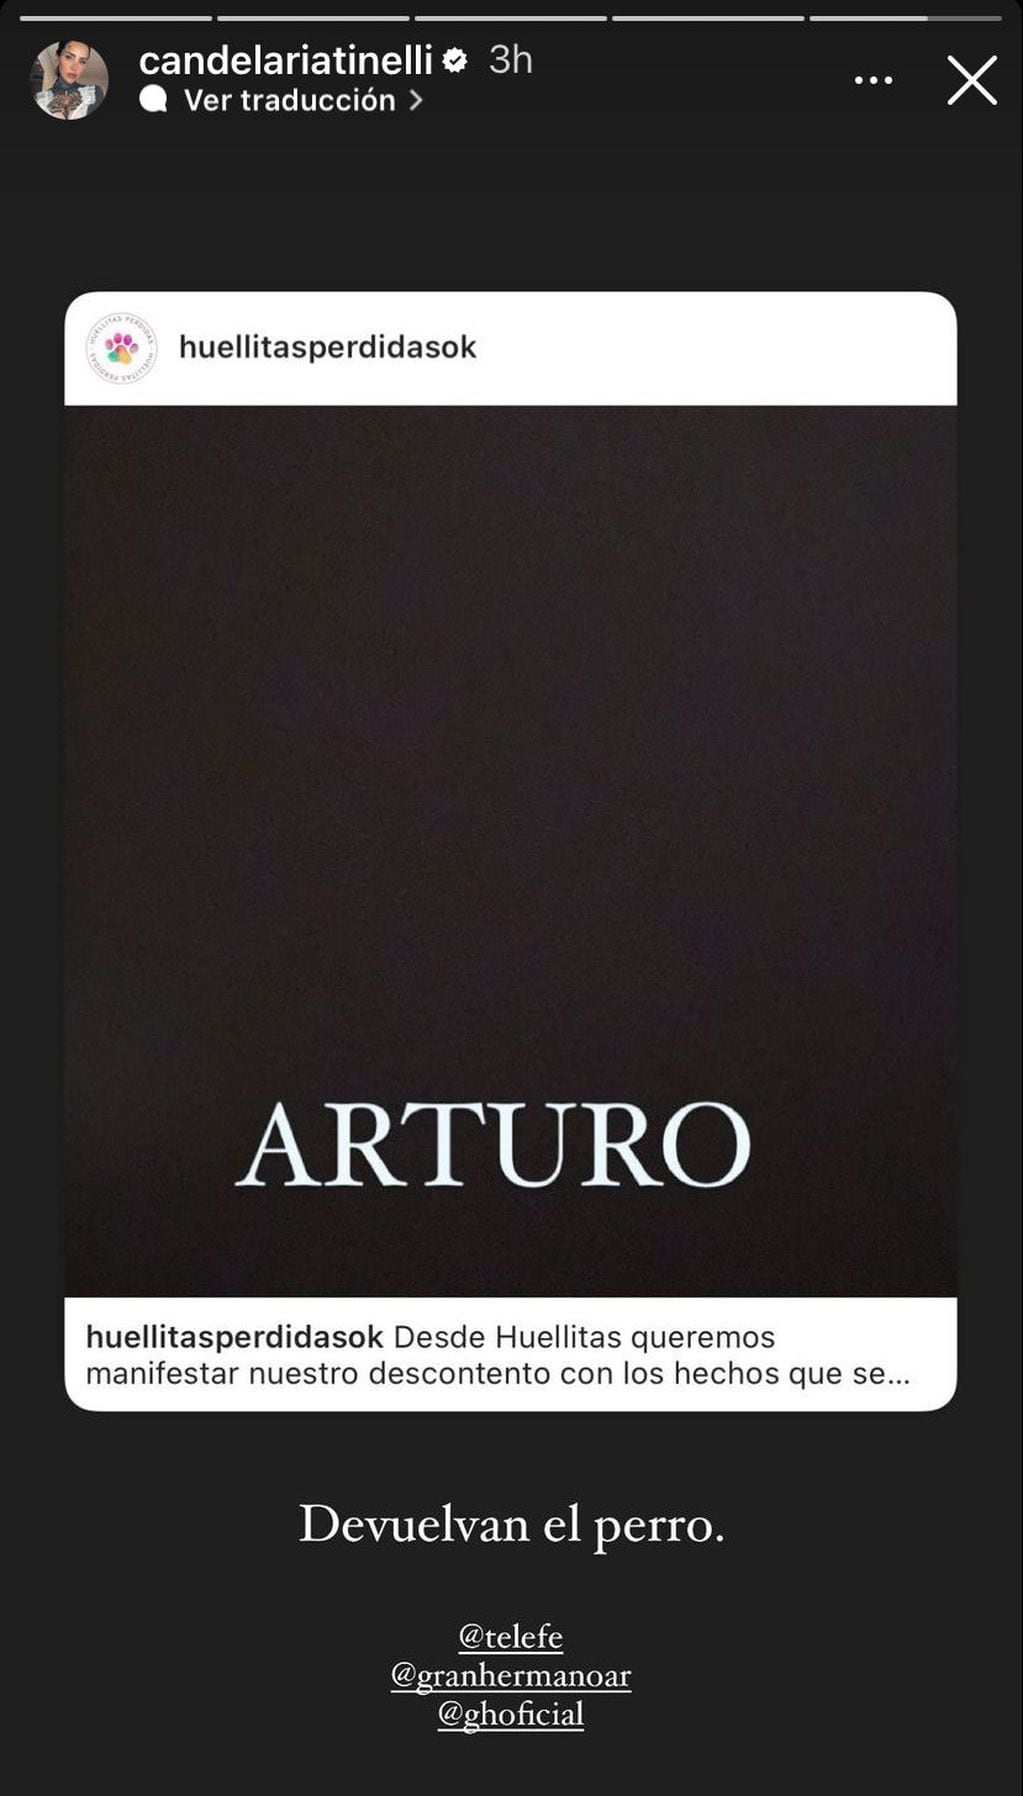 Los famosos que se unieron a la causa y piden que Gran Hermano devuelva a Arturo, el perro. Captura de Instagram.